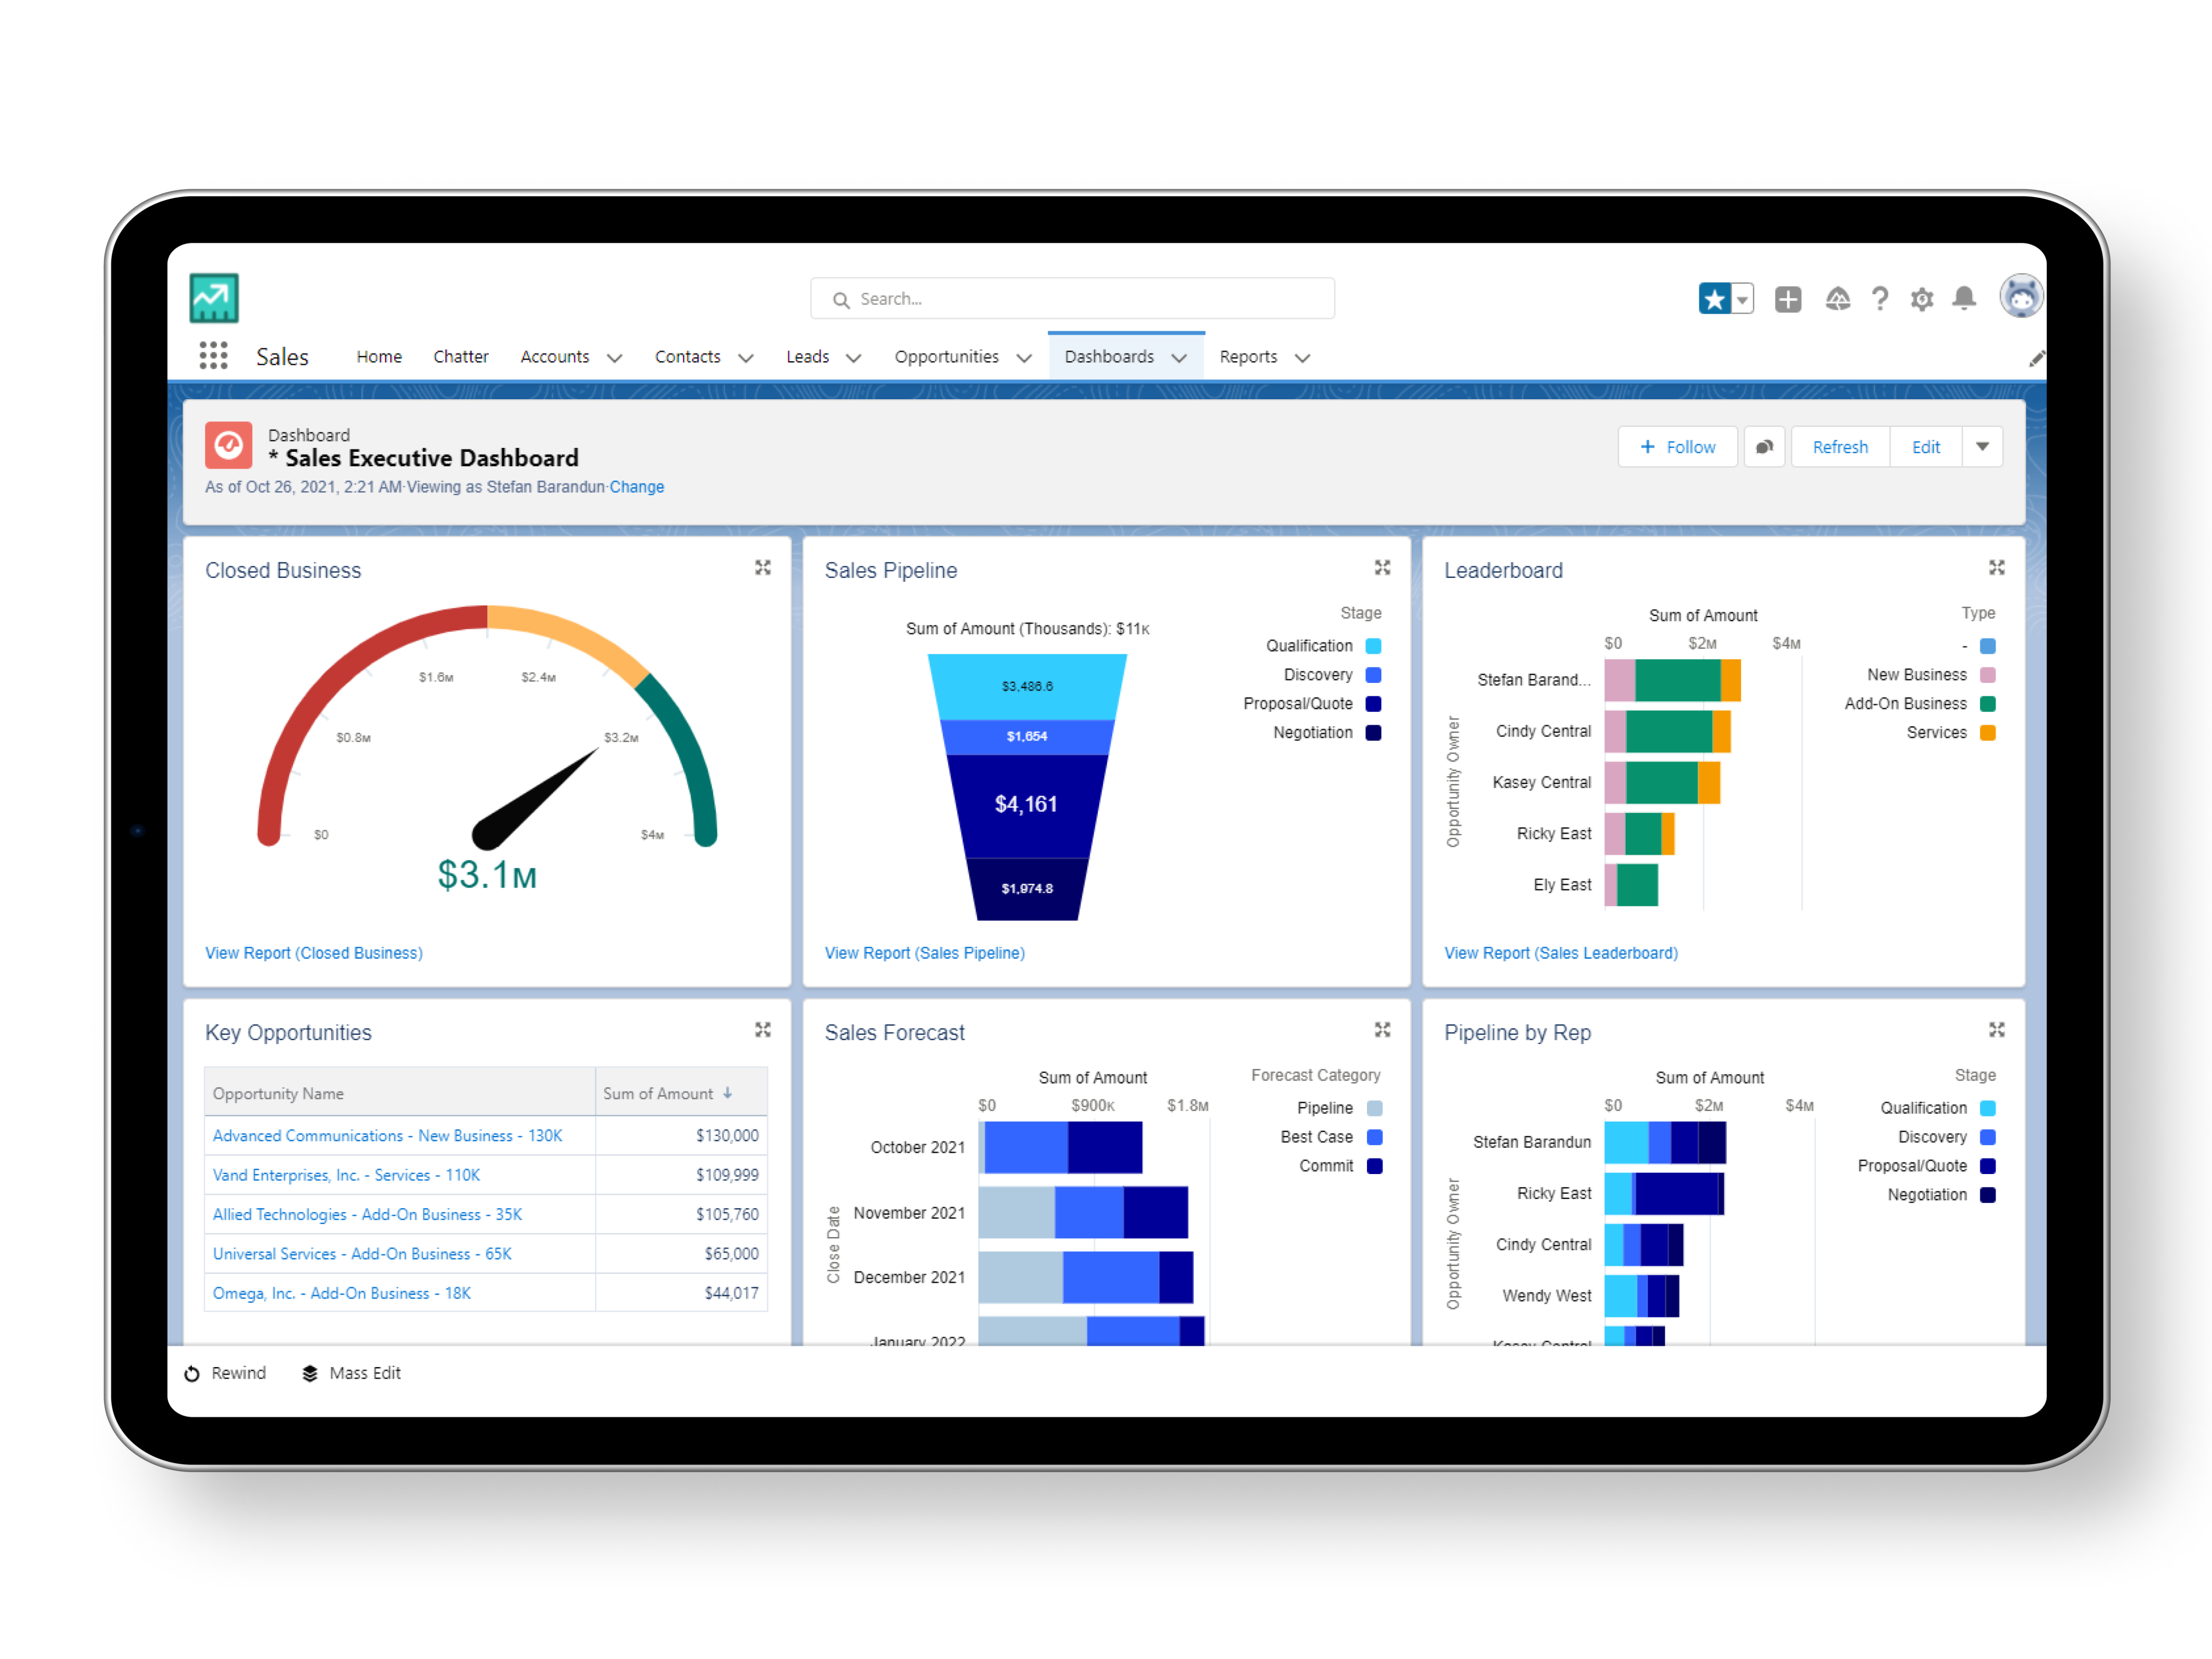 Der Screenshot zeigt ein Dashboard auf der Salesforce Oberfläche, auf dem verschiedene Vertriebsspezifische KPIs dargestellt werden. Hierzu gehören die Umsatzziele, die Pipeline, Schlüssel Opportunities und der Sales Forecast. 